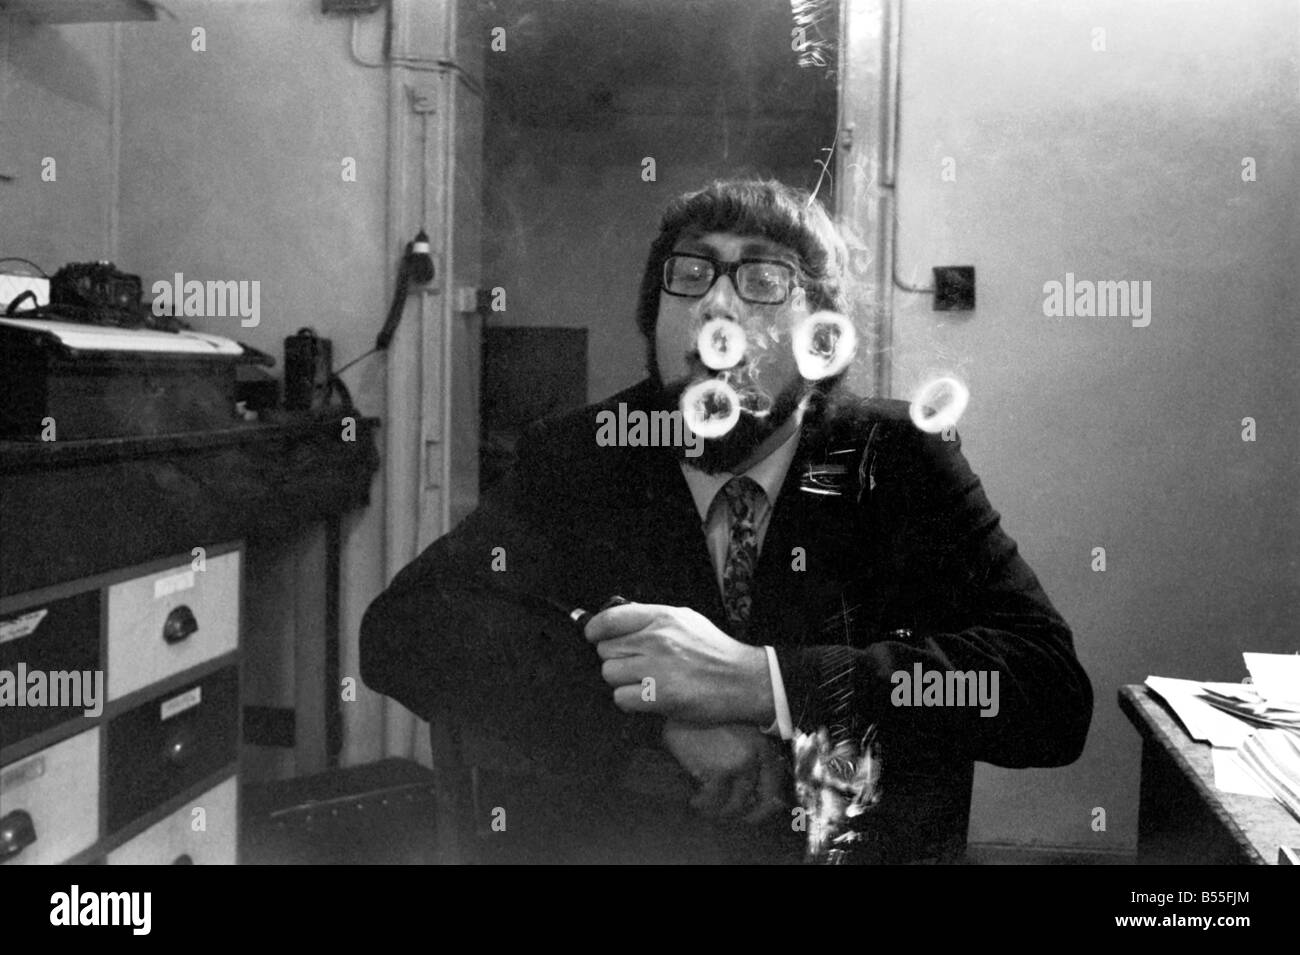 Un homme fume une cigarette soufflant des ronds de fumée. Novembre 1969 &# 13 ;&# 10;Z12004-009 Banque D'Images